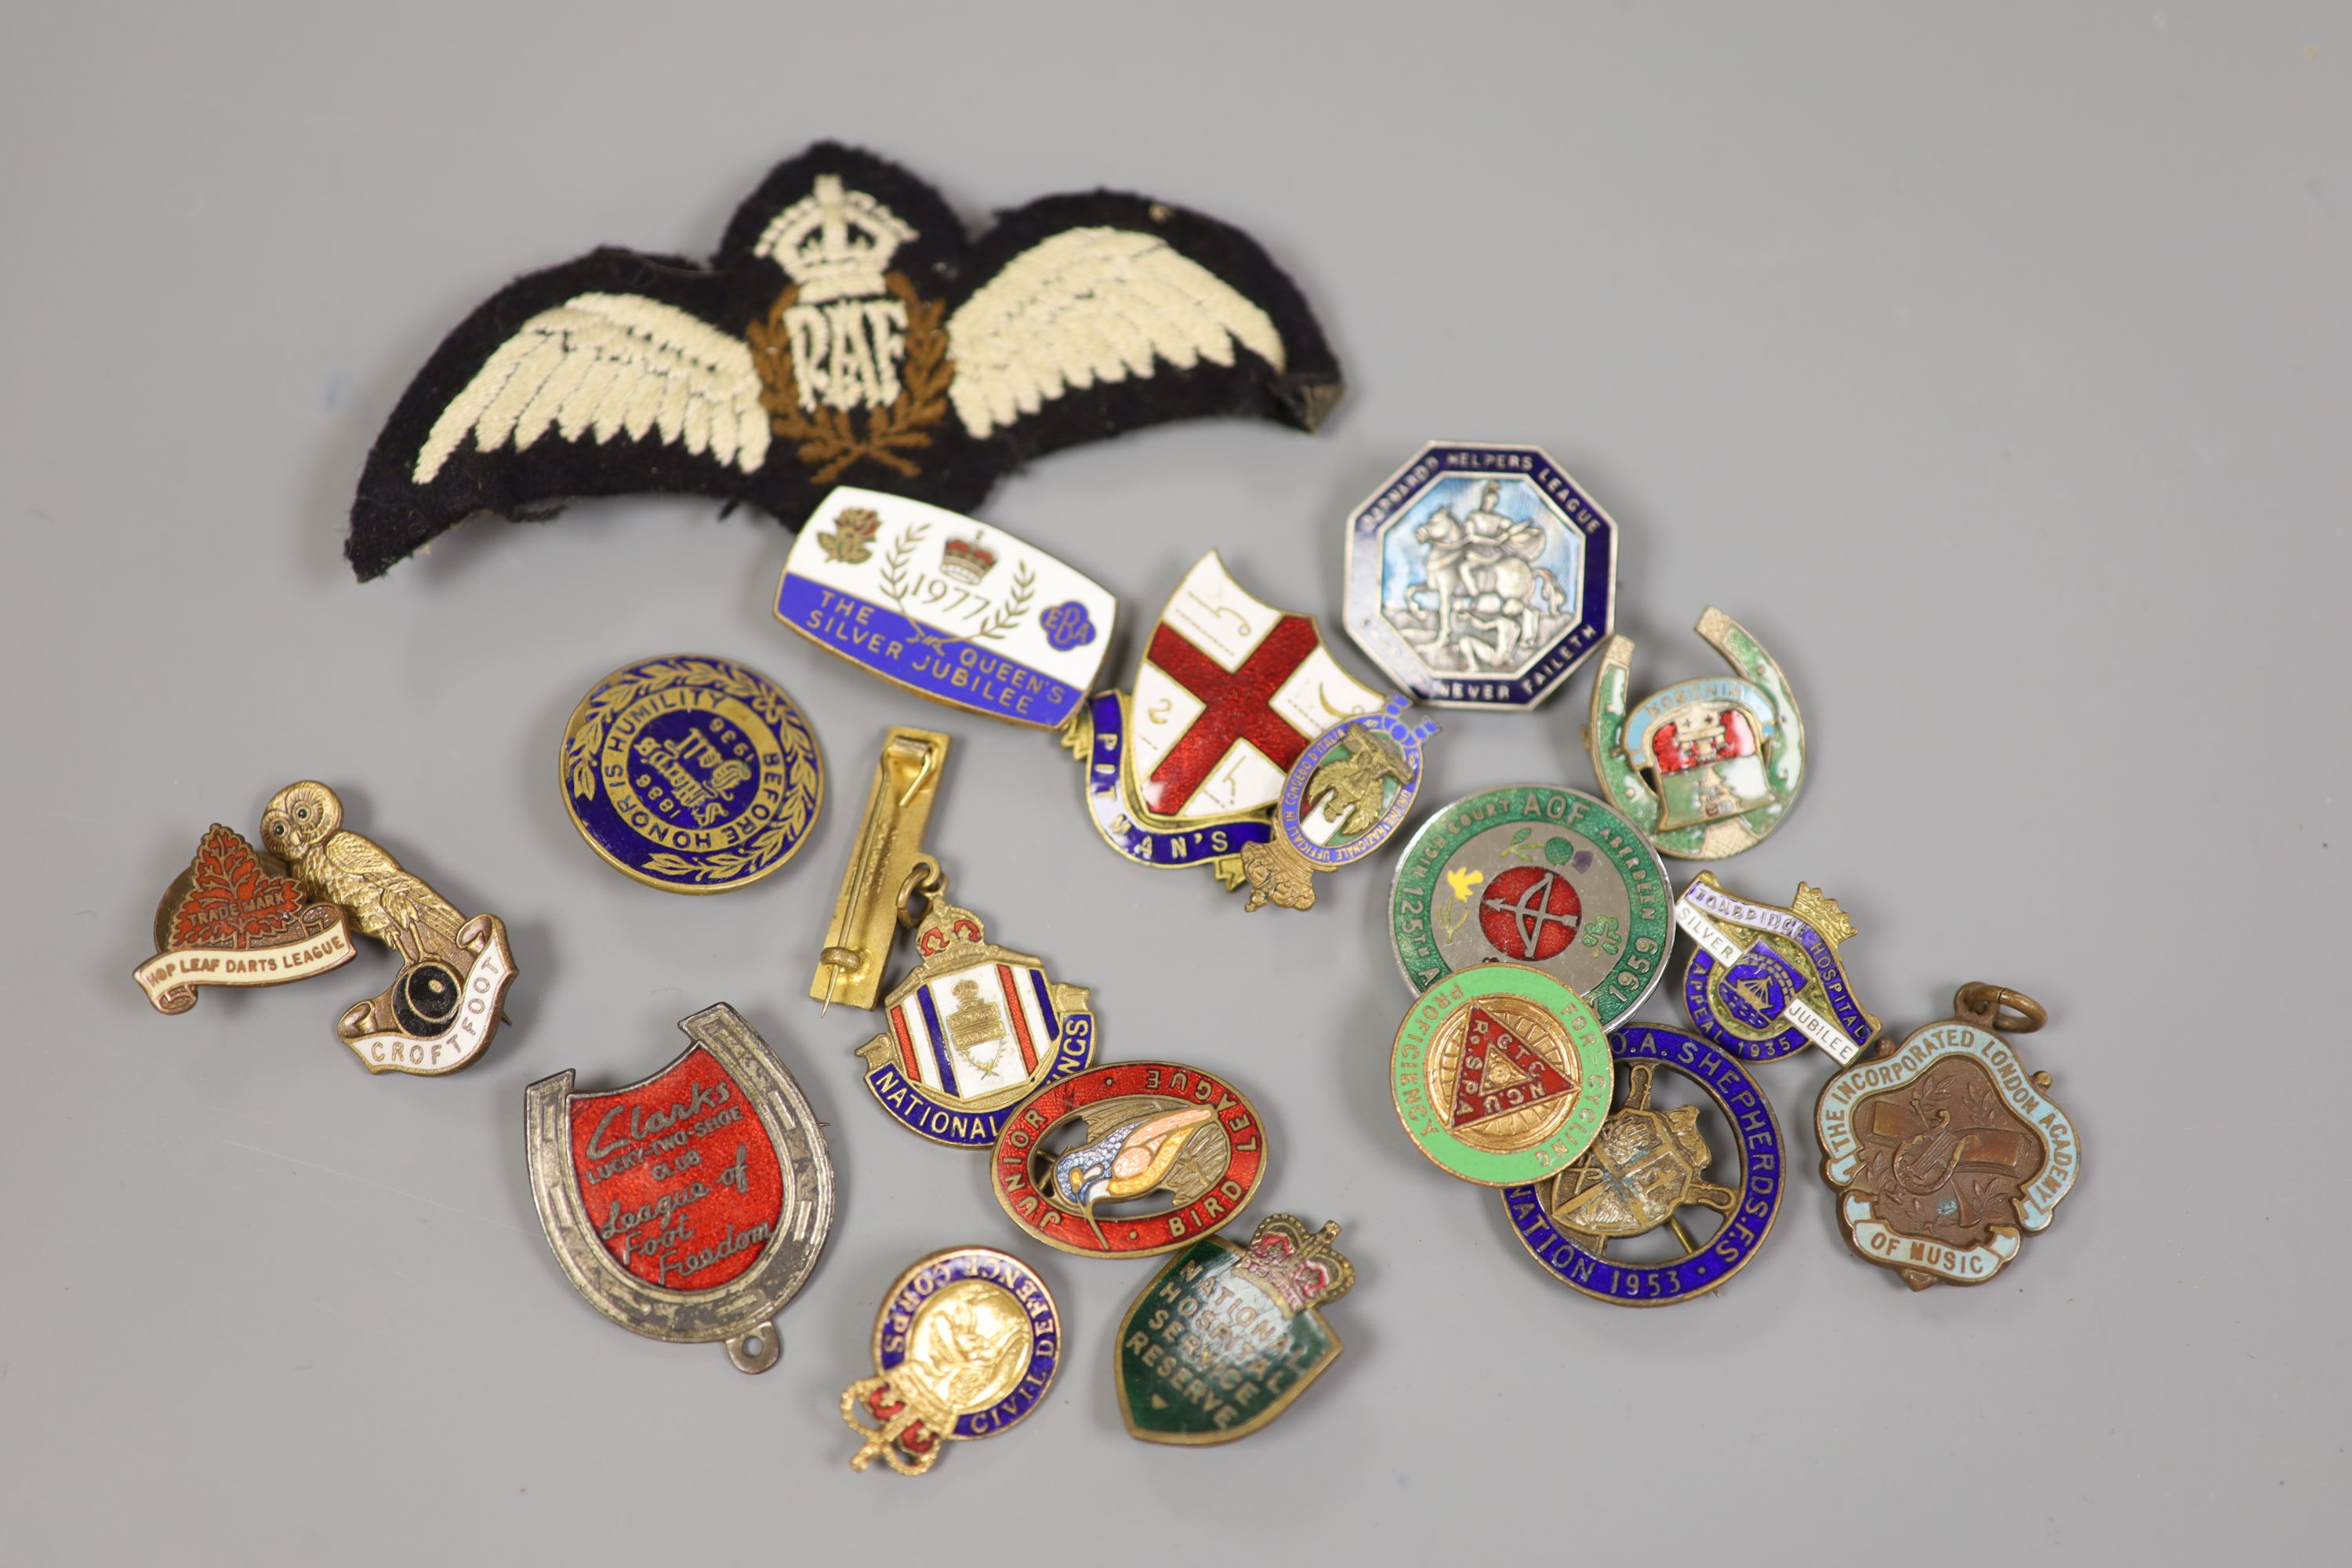 A quantity of badges